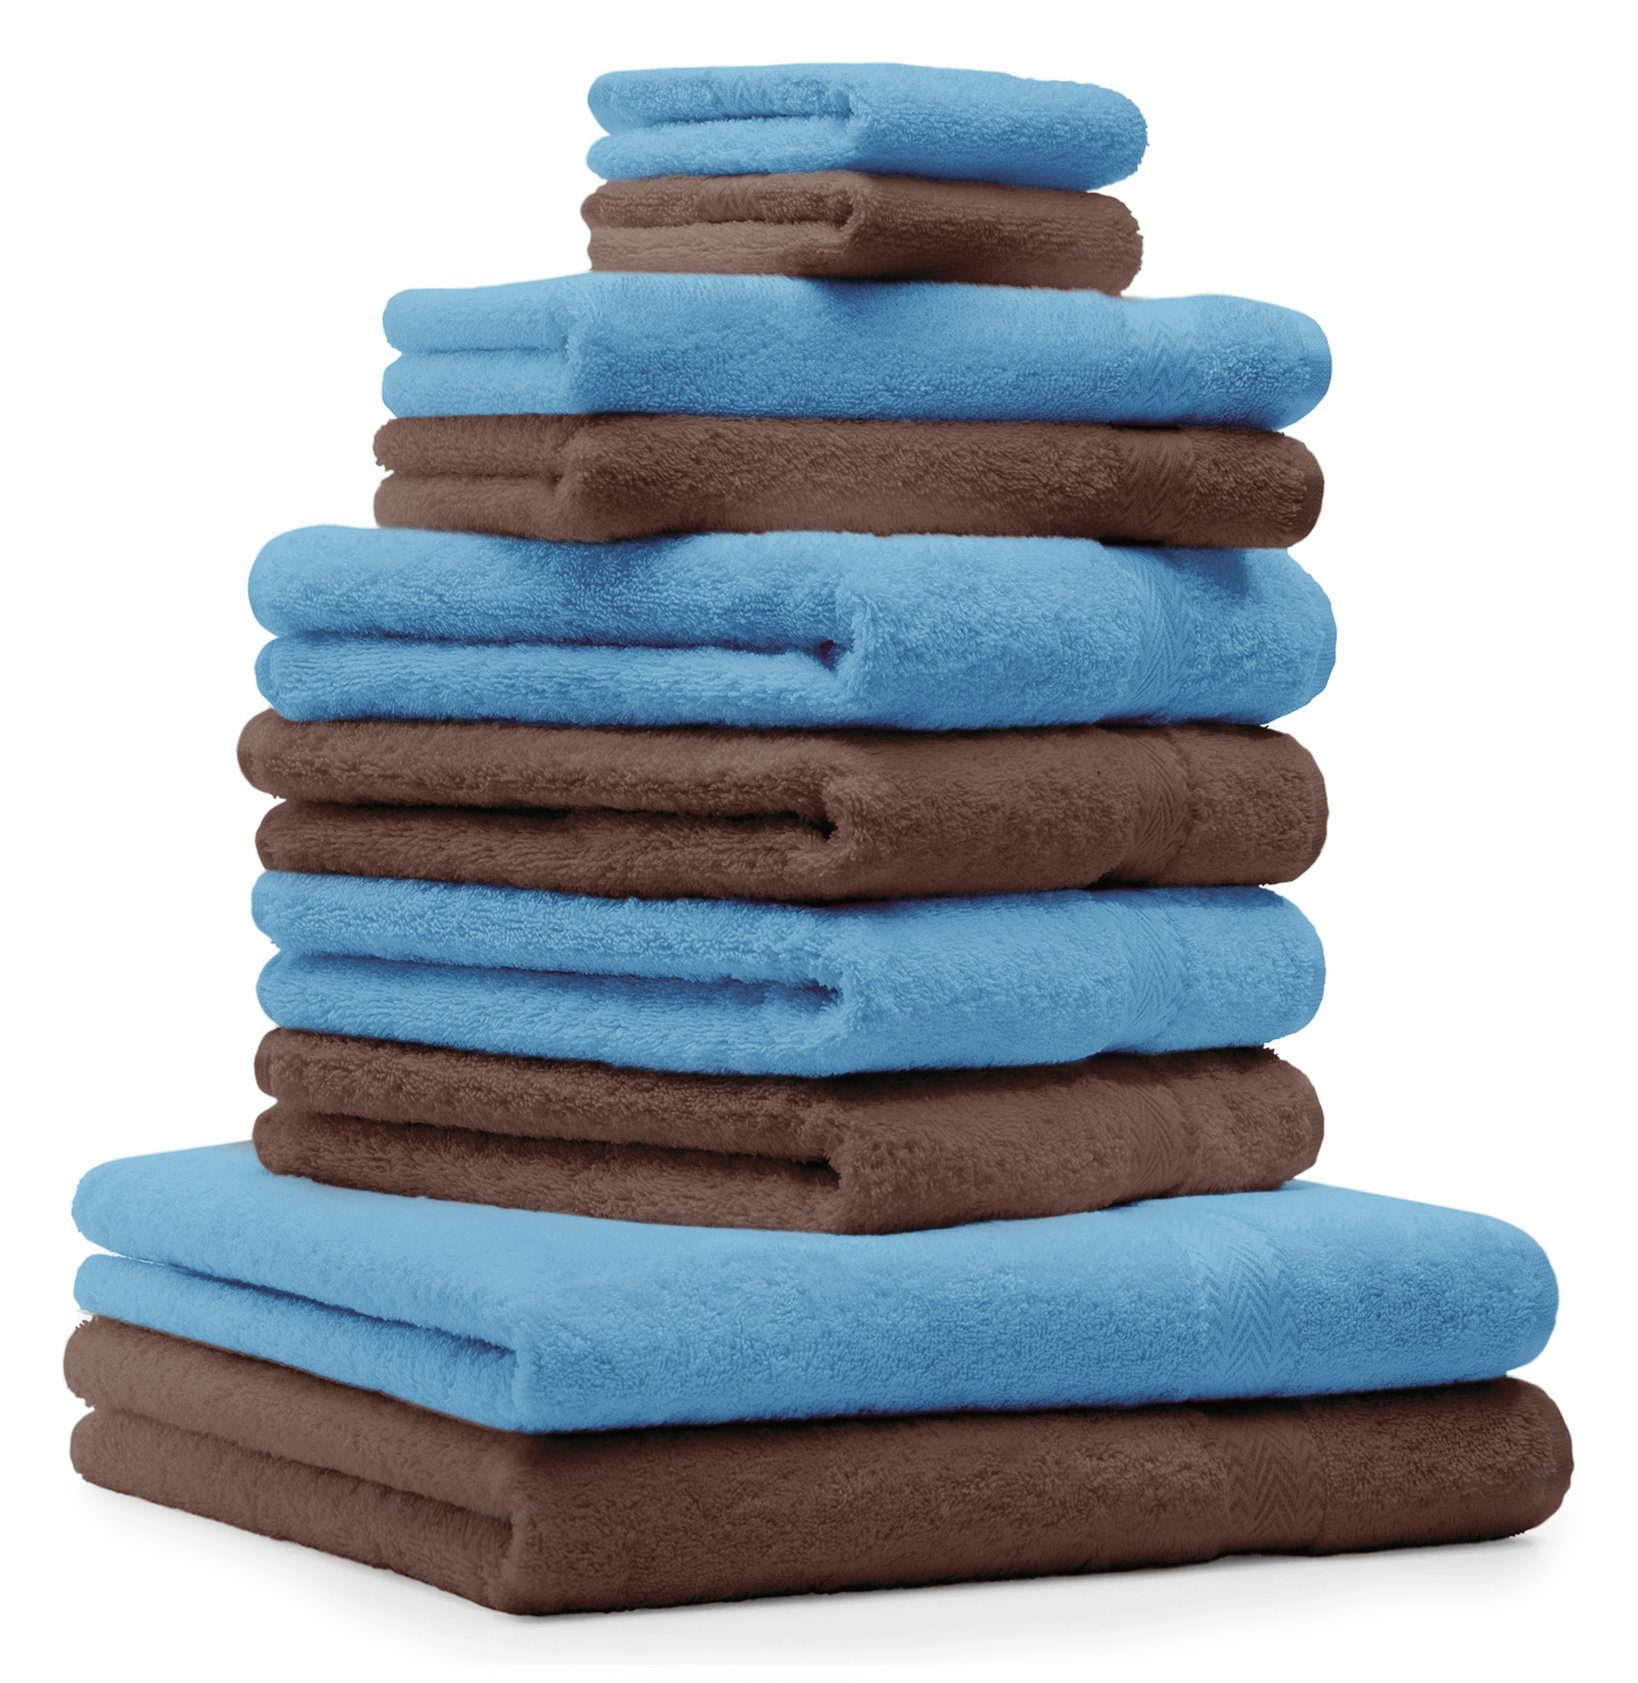 Betz Handtuch Set 10-TLG. Handtuch-Set Premium Farbe Hellblau & Nussbraun, Baumwolle, (10-tlg)